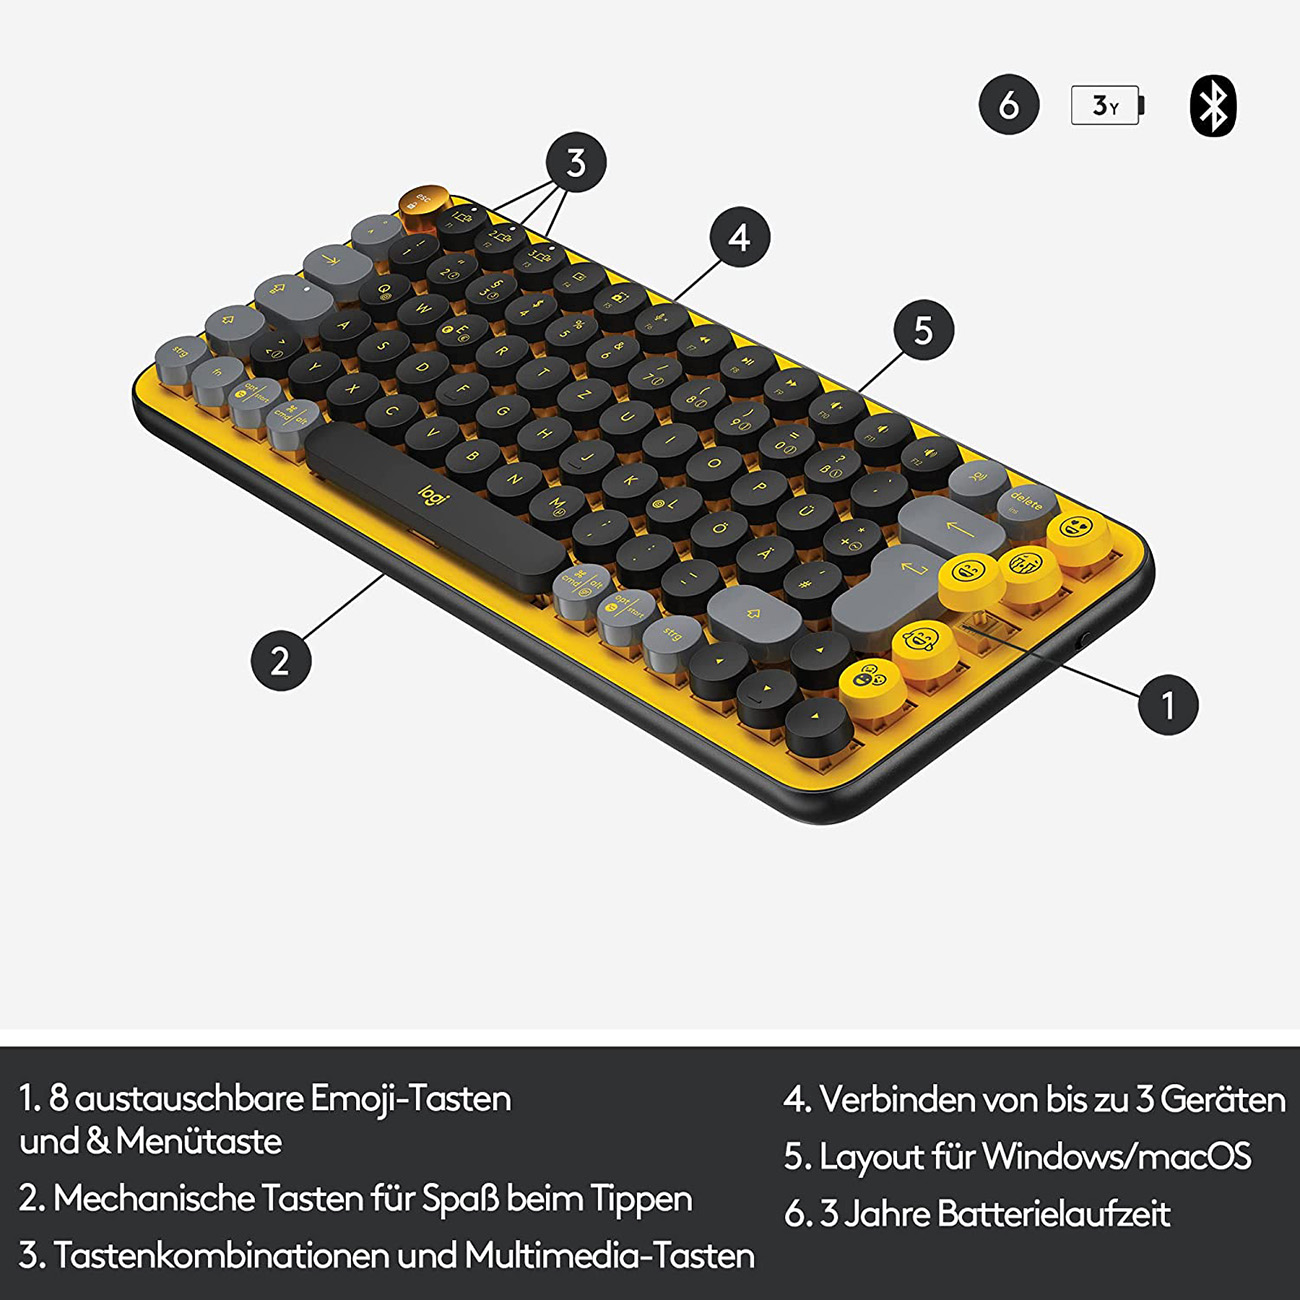 LOGITECH POP Keys, Tastatur Wireless